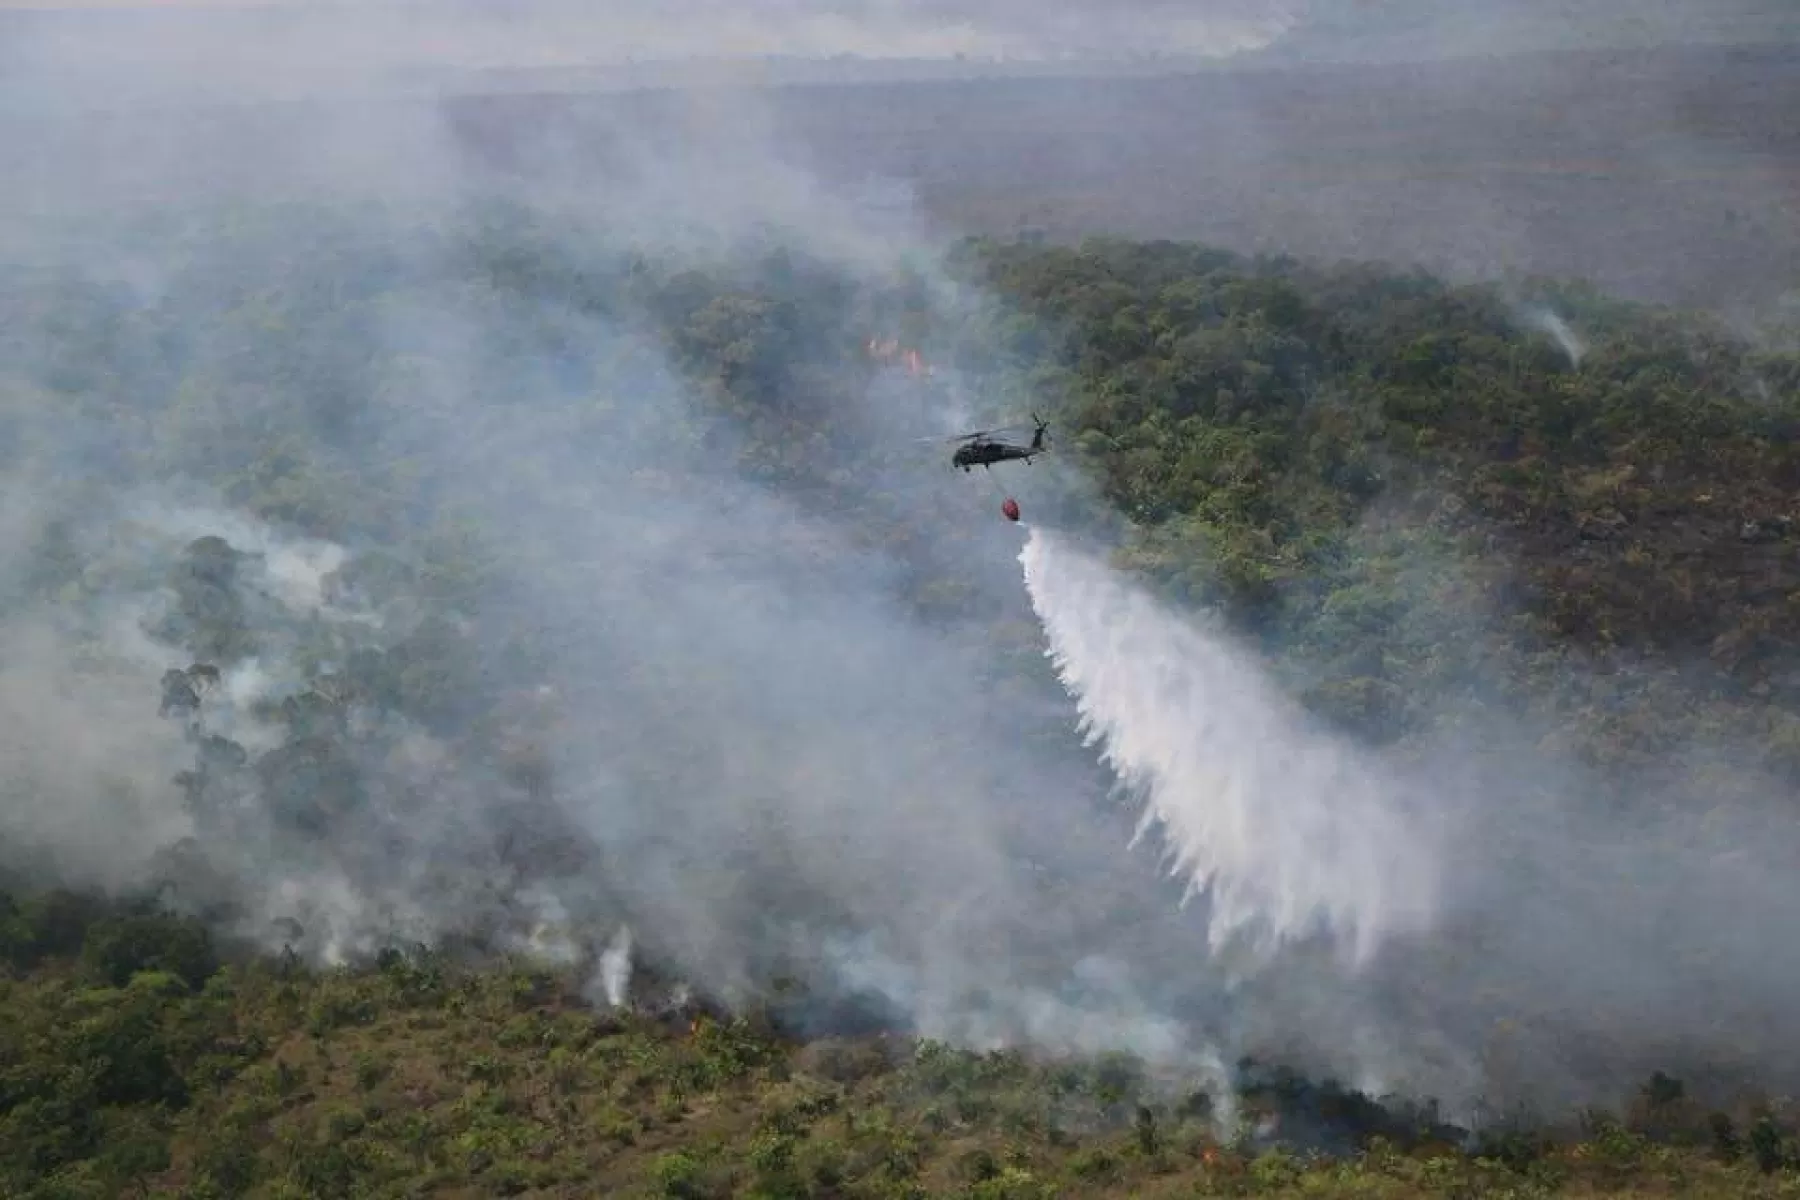 De la serranía de La Macarena afectó aproximadamente 1600 hectáreas, quemando vegetación de tipo rupícola o rupestre.